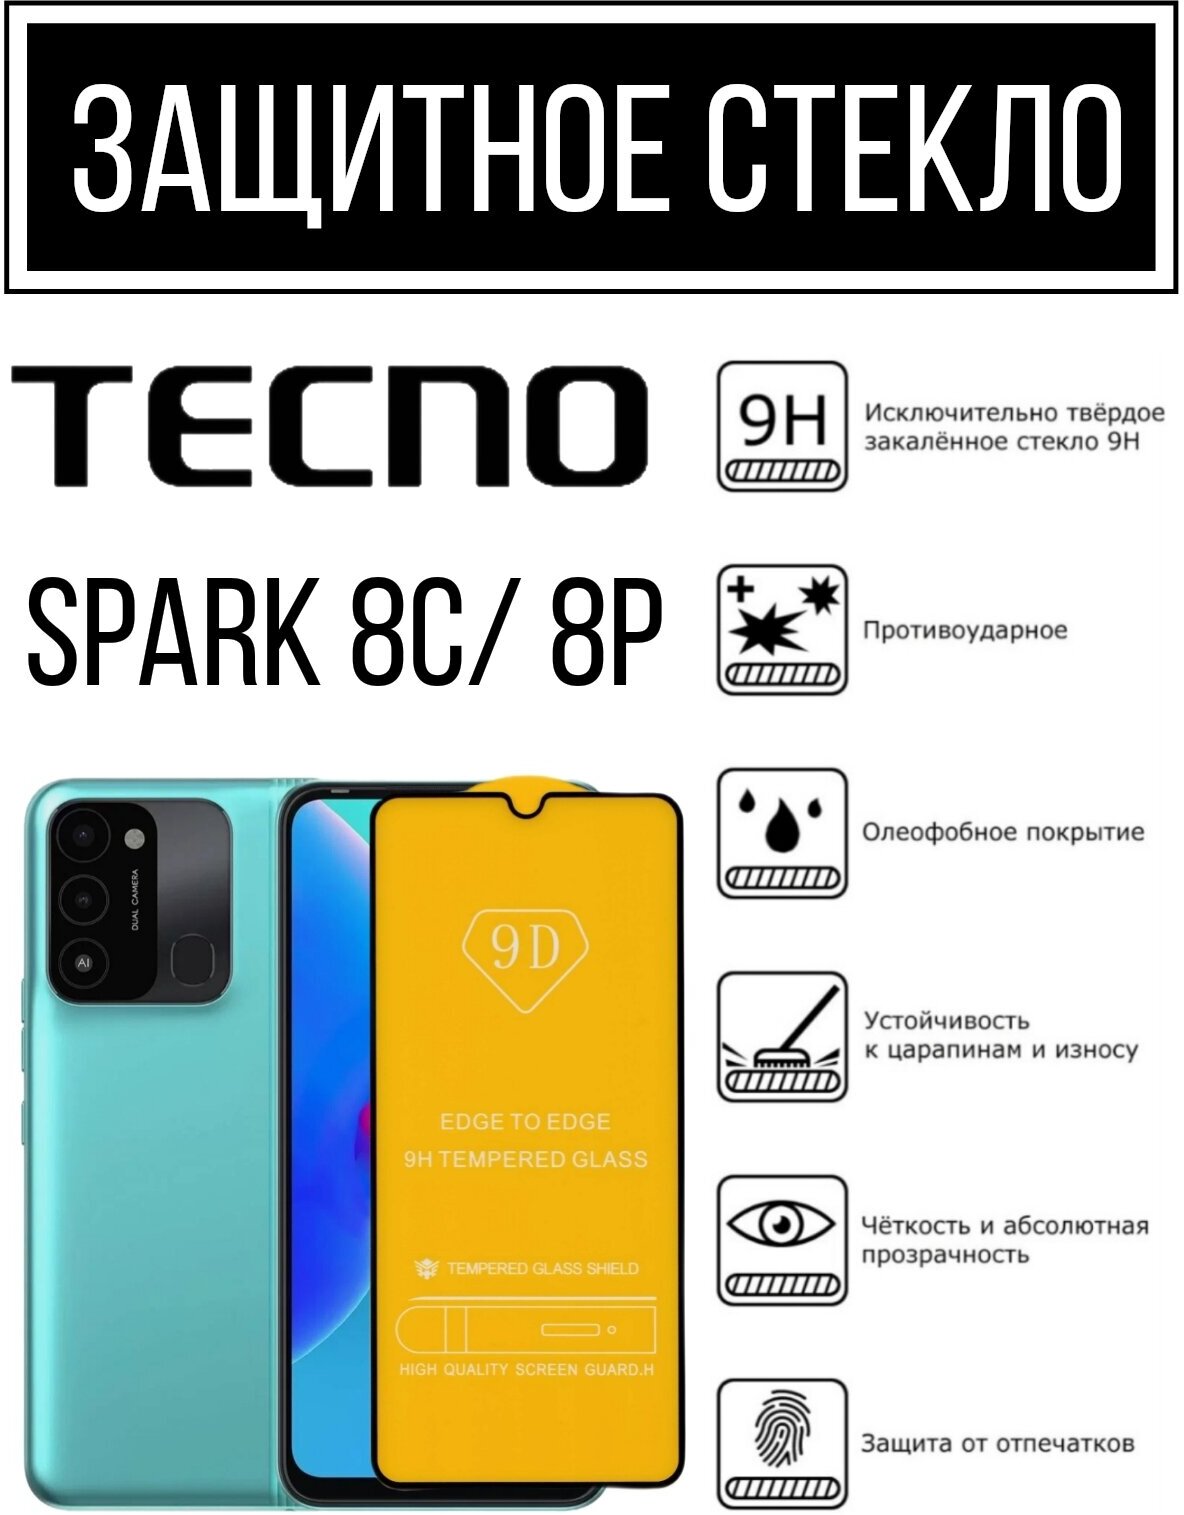 Противоударное закалённое защитное стекло для смартфонов Tecno Spark 8c/ 8p Тесно Спарк 8с/8р